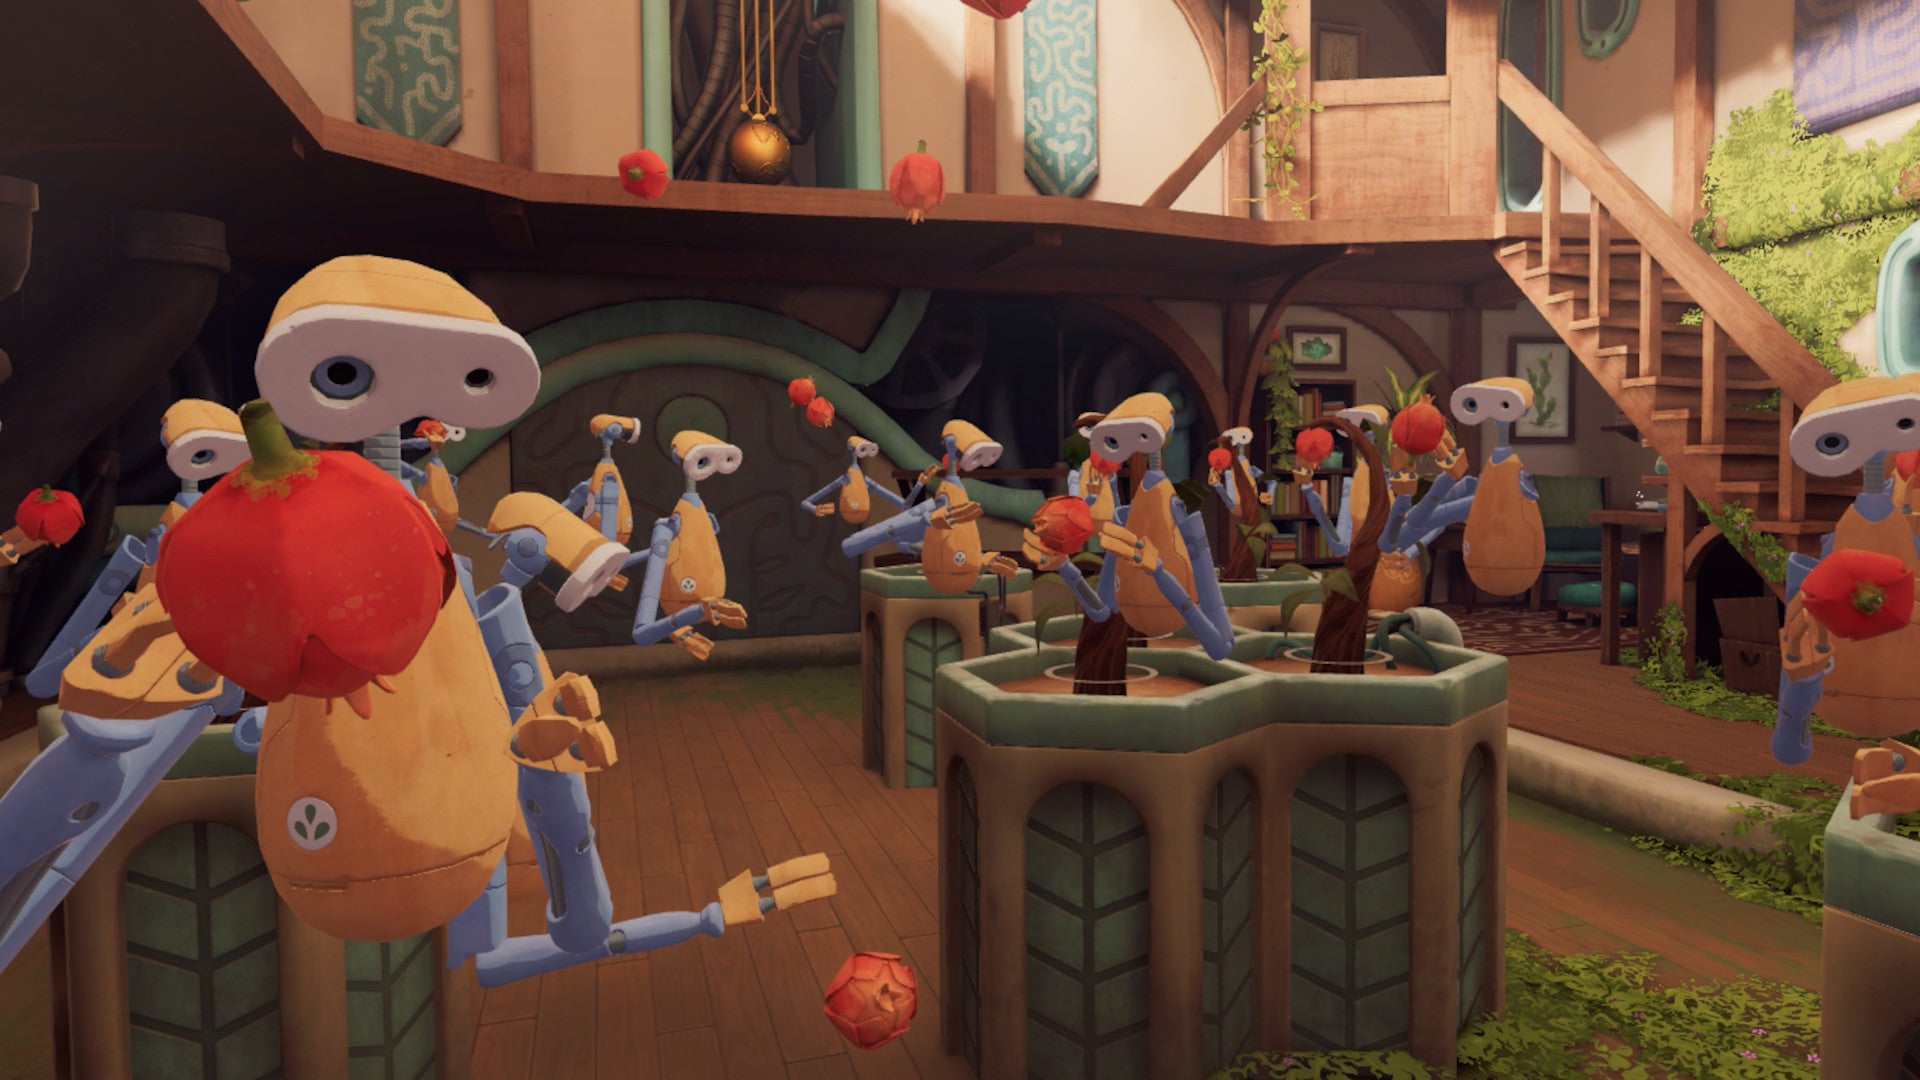 Uma captura de tela do jogo VR Clockwinder, com muitos pequenos robôs humanóides idênticos, todos fazendo coisas diferentes em um pequeno jardim